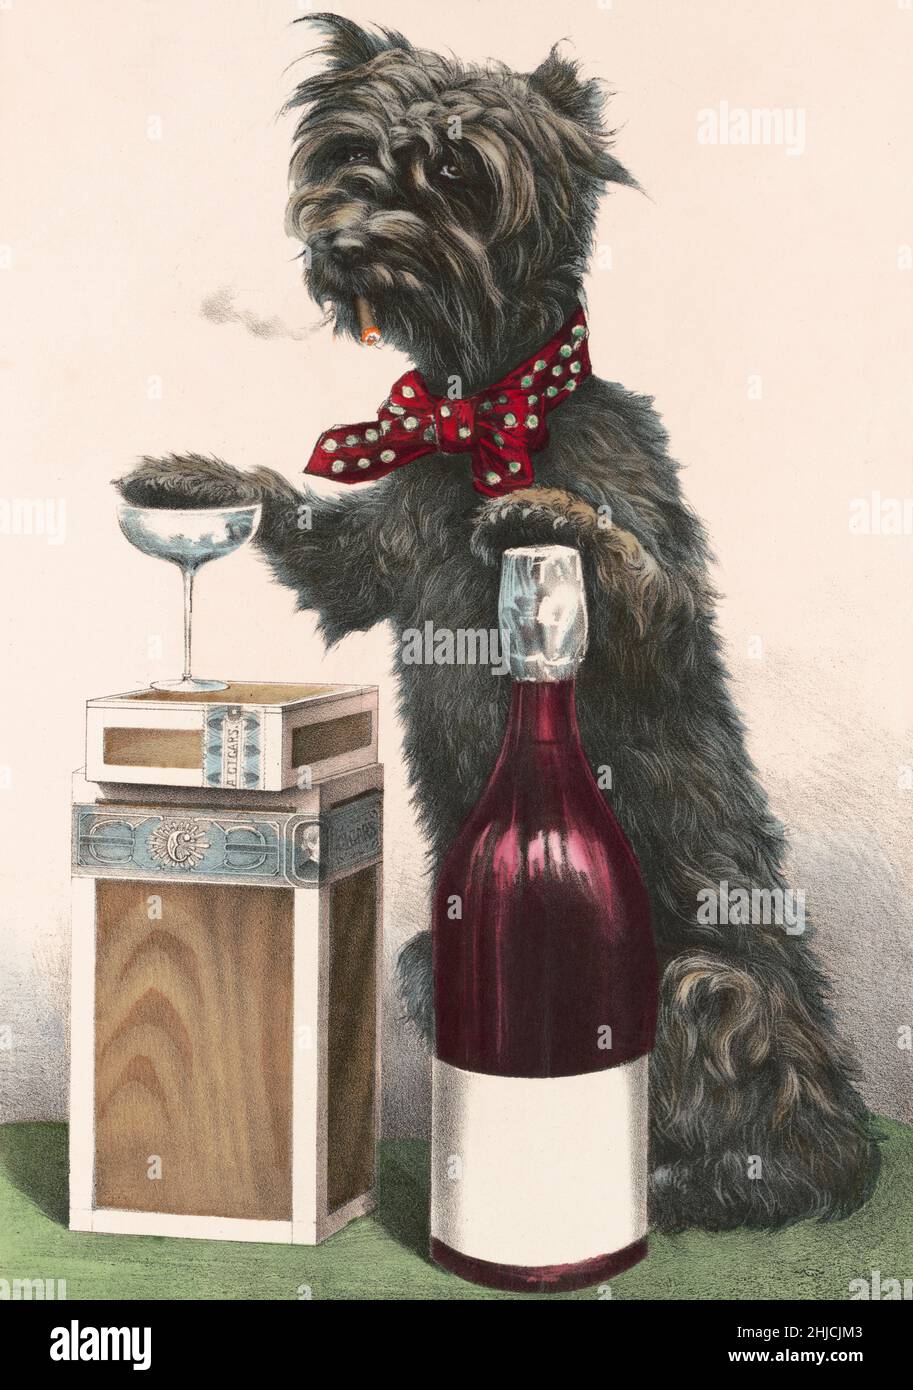 Ein fröhlicher Hund mit Zigarren und Alkohol. Handkolorierte Lithographie, Currier & Ives, 1878. Stockfoto